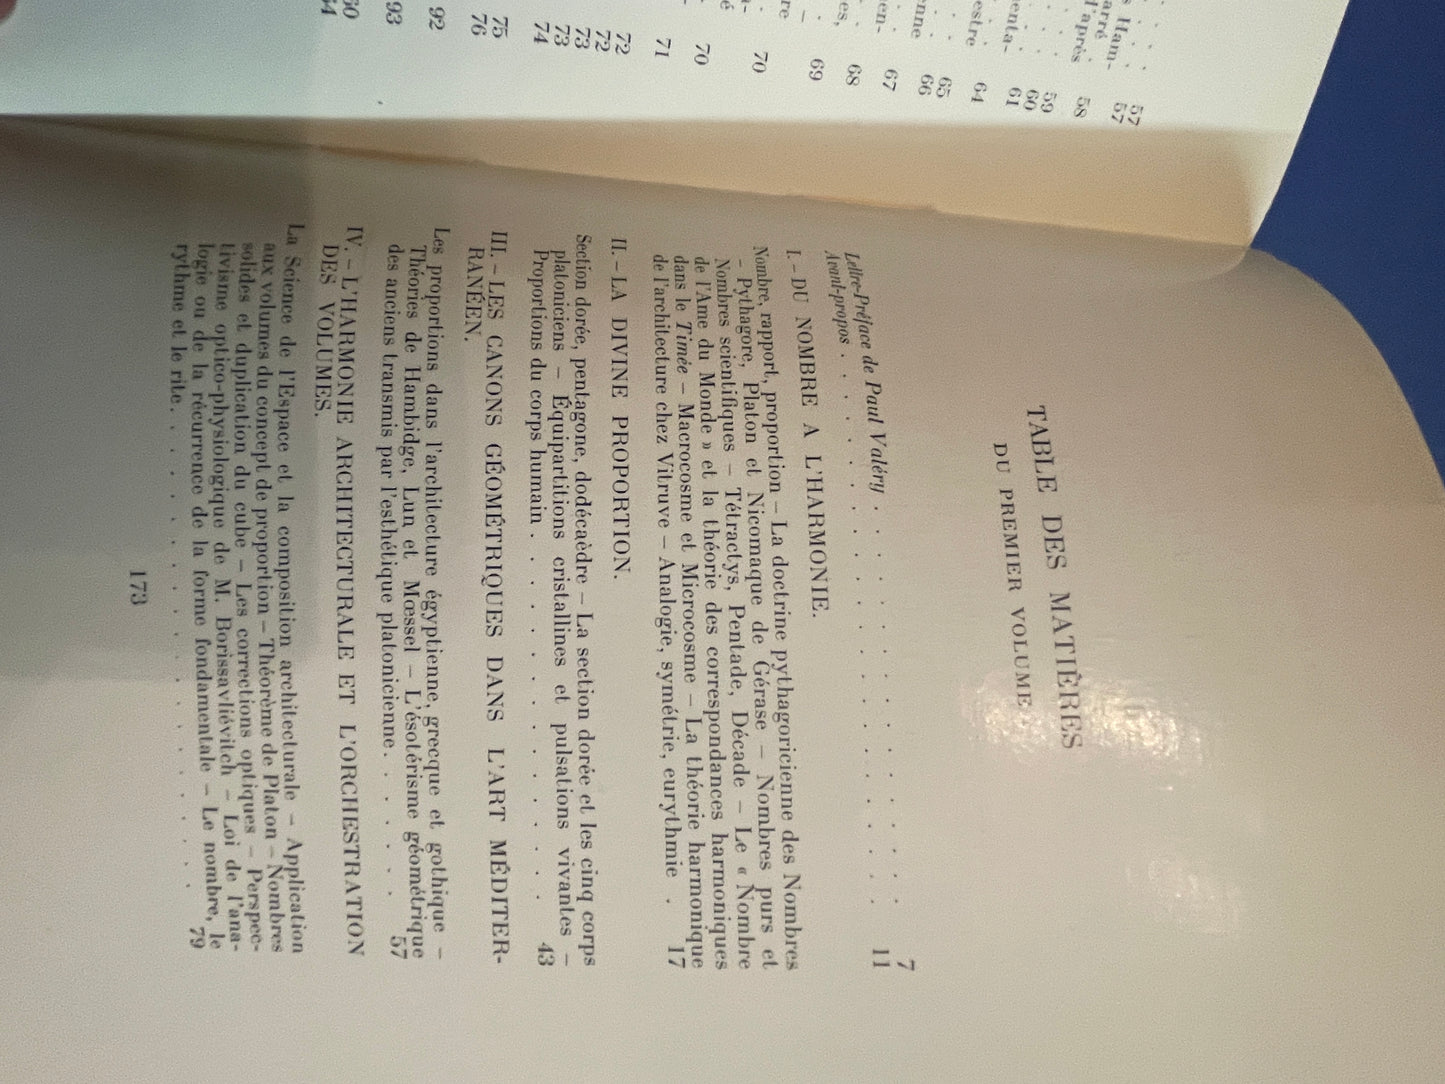 Matila C. GHYKA ‎Le nombre d'or.Paris, Gallimard, NRF, 1958. vol 1